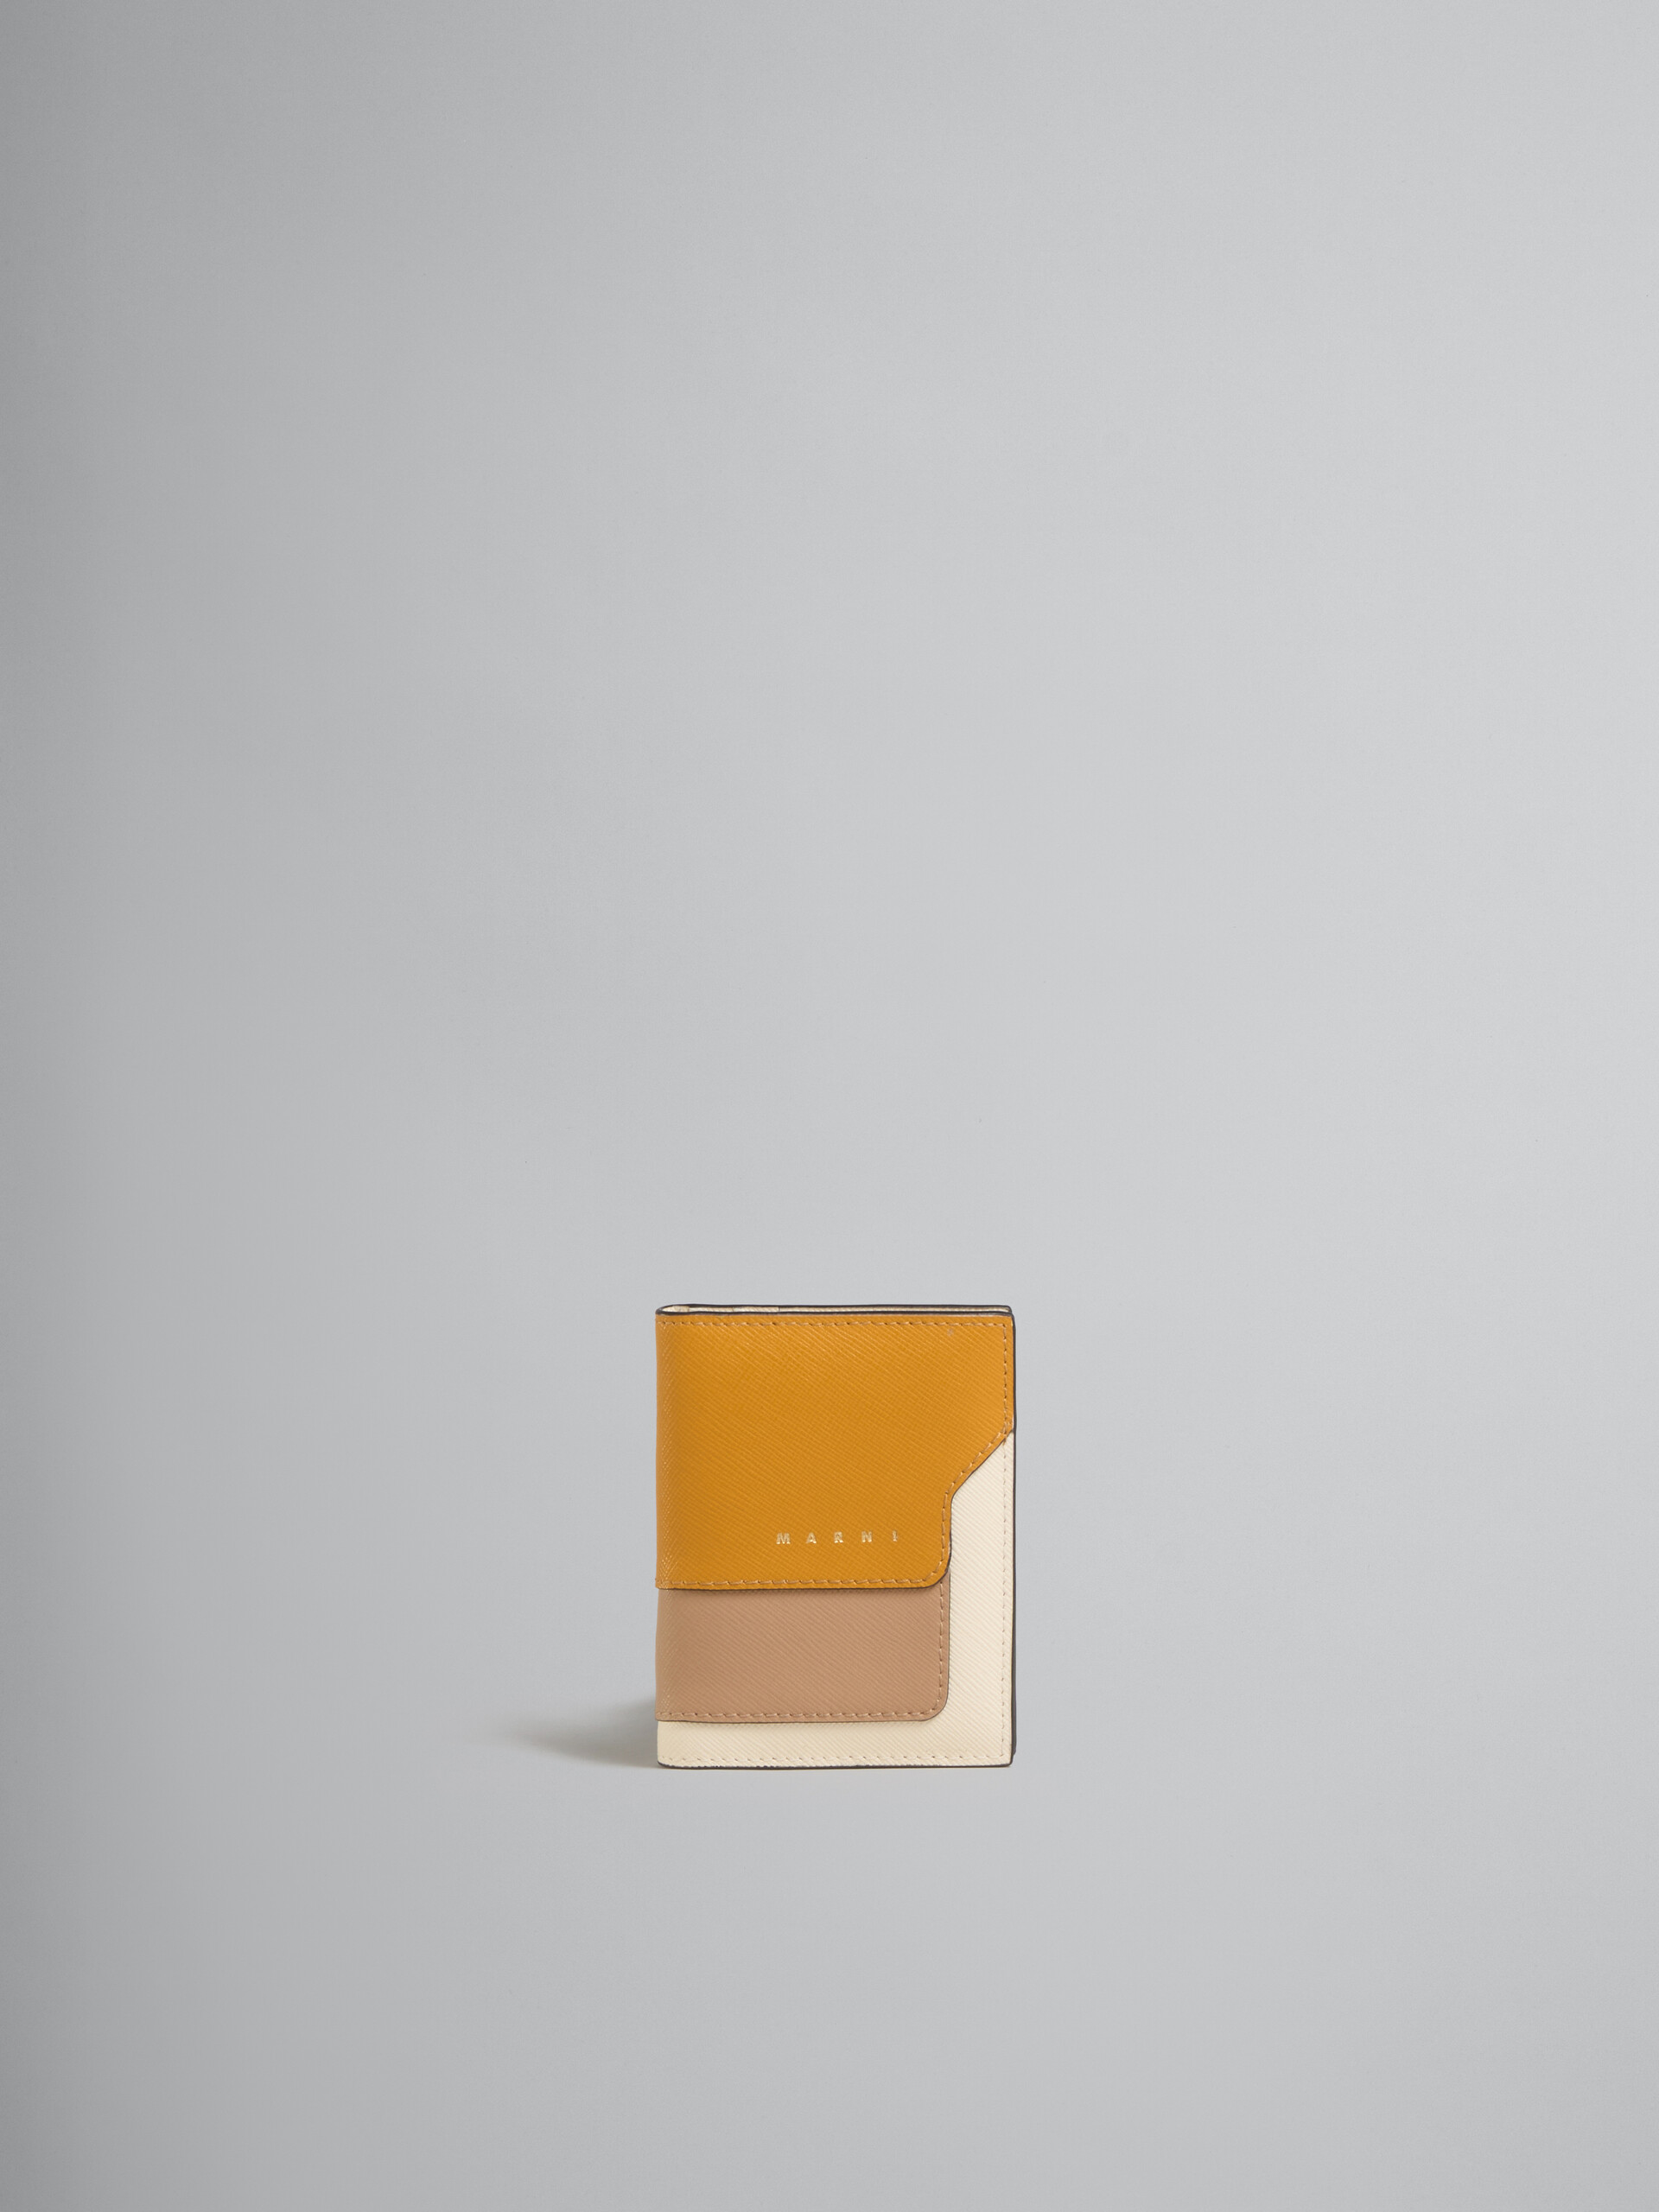 オレンジ、ベージュ、ホワイト サフィアーノレザー製カードホルダー - 財布 - Image 1